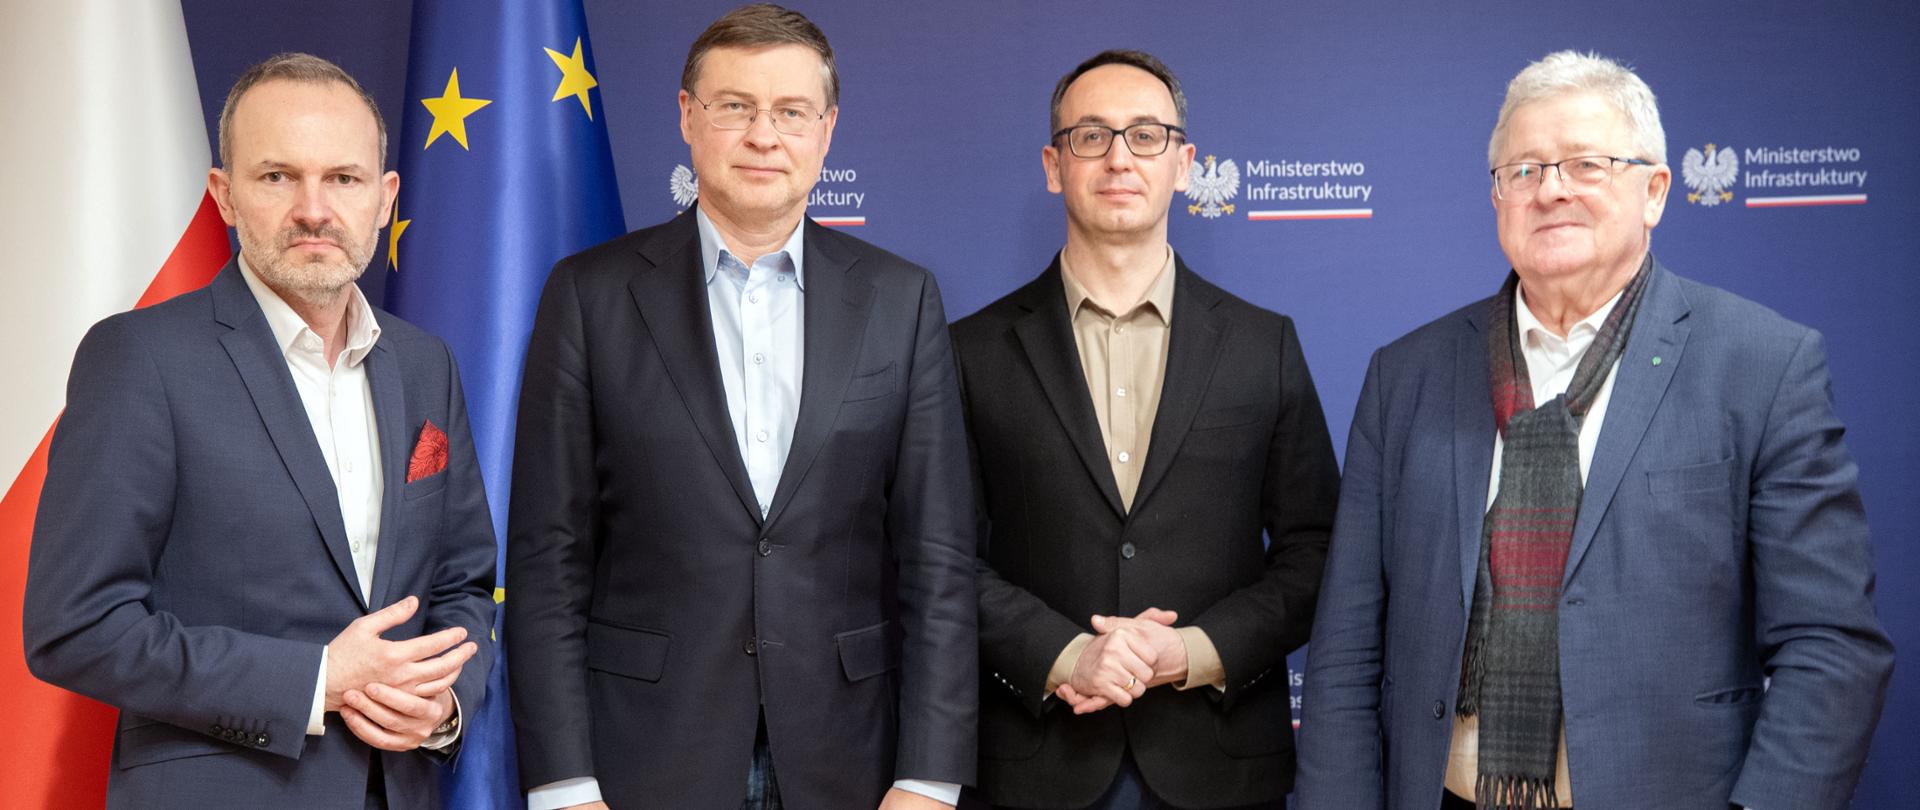 Spotkanie trzech ministrów z wiceprzewodniczącym Komisji Europejskiej w Ministerstwie Infrastruktury